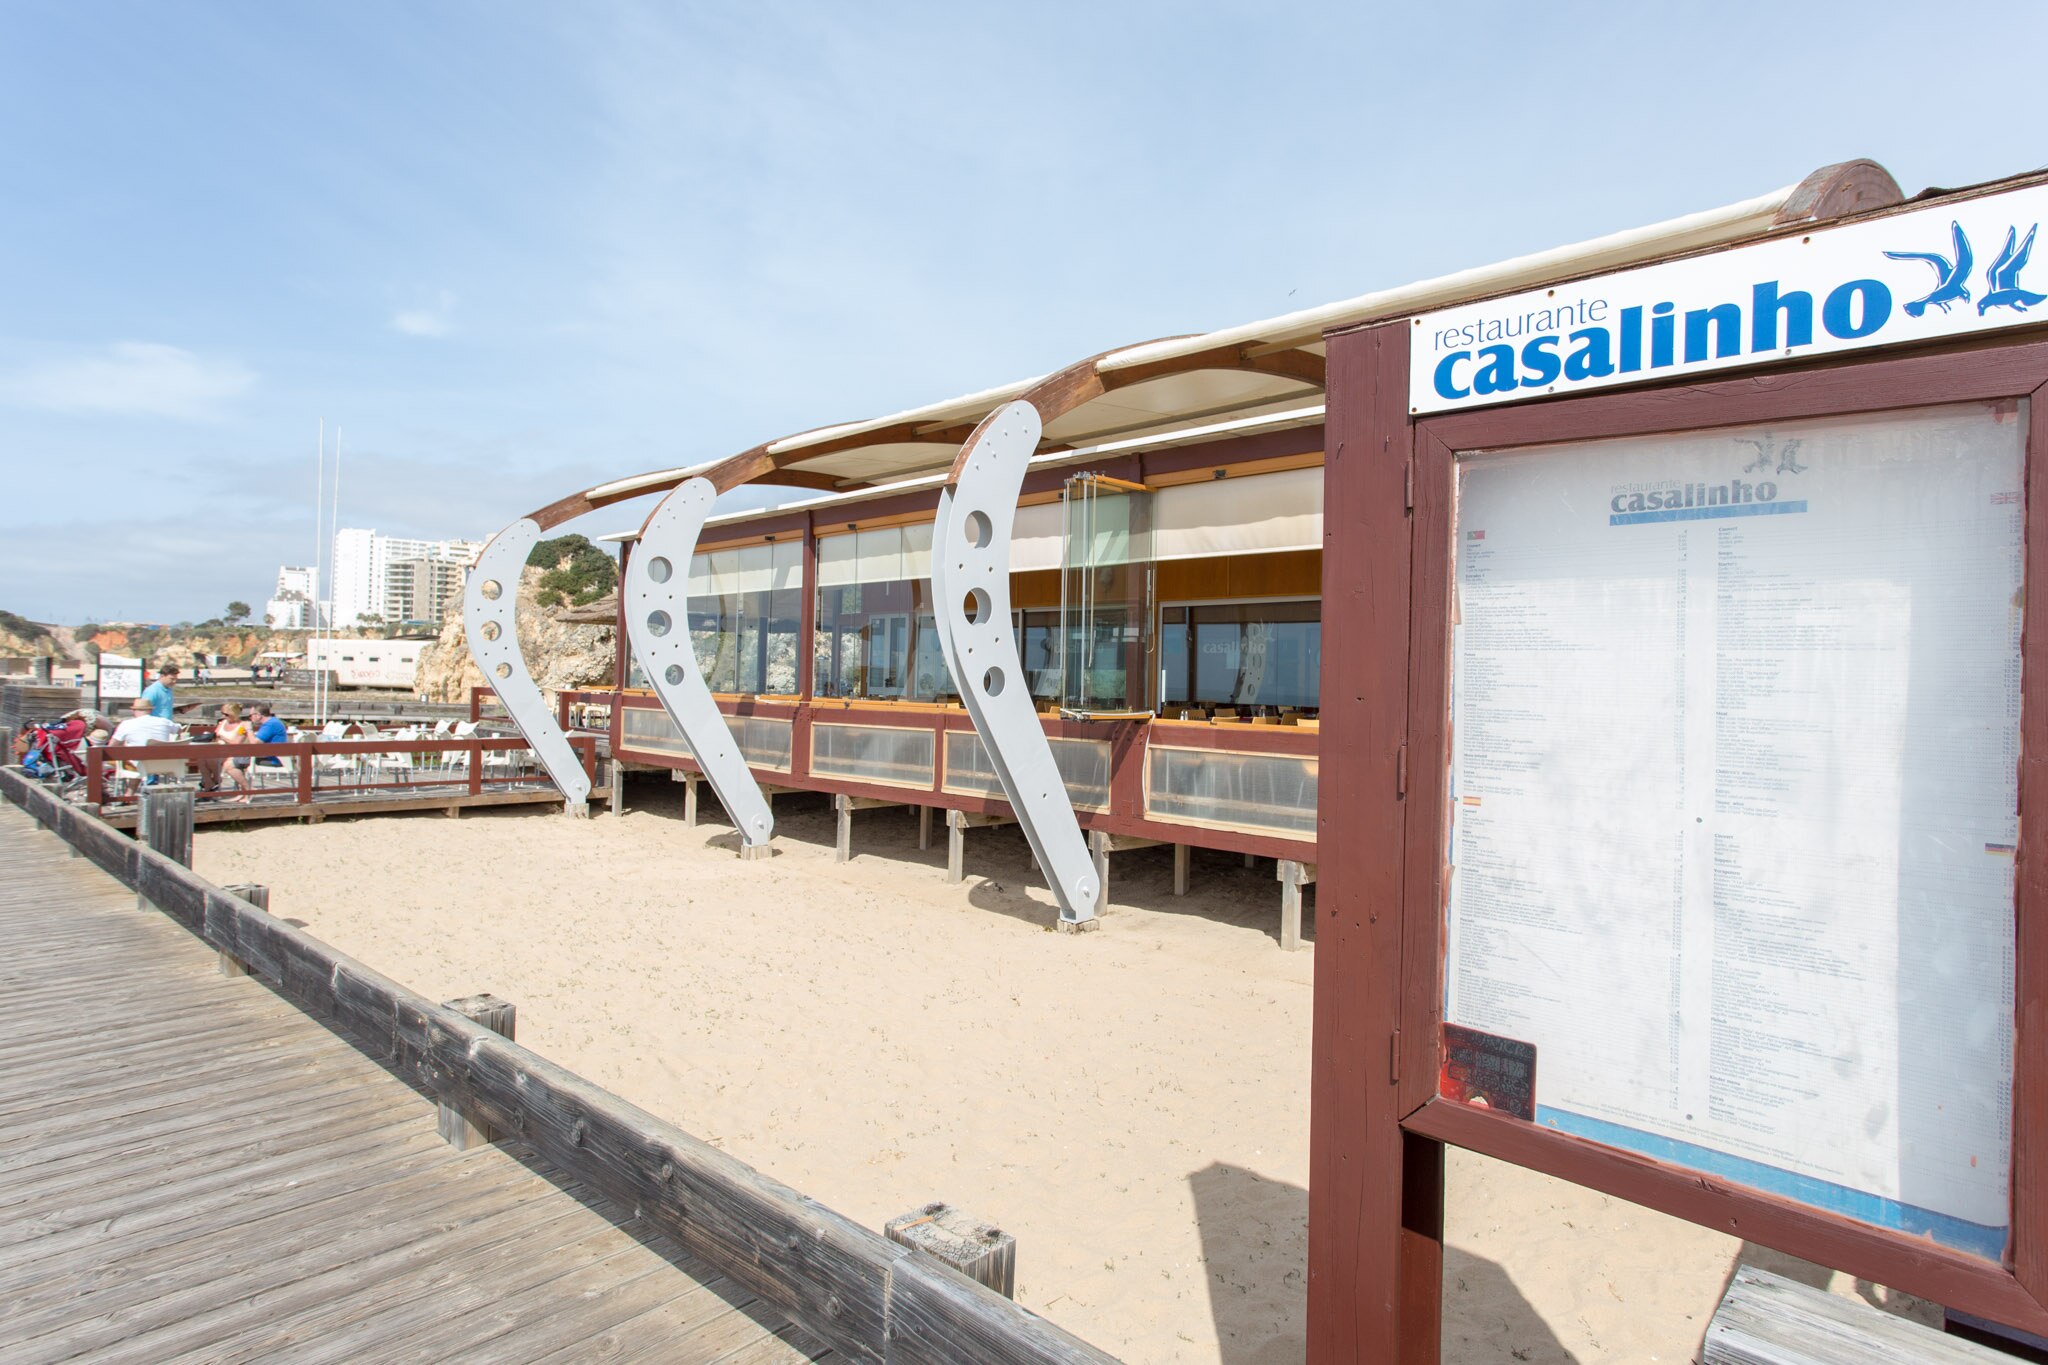 Casalinho Beach bar & Restaurant